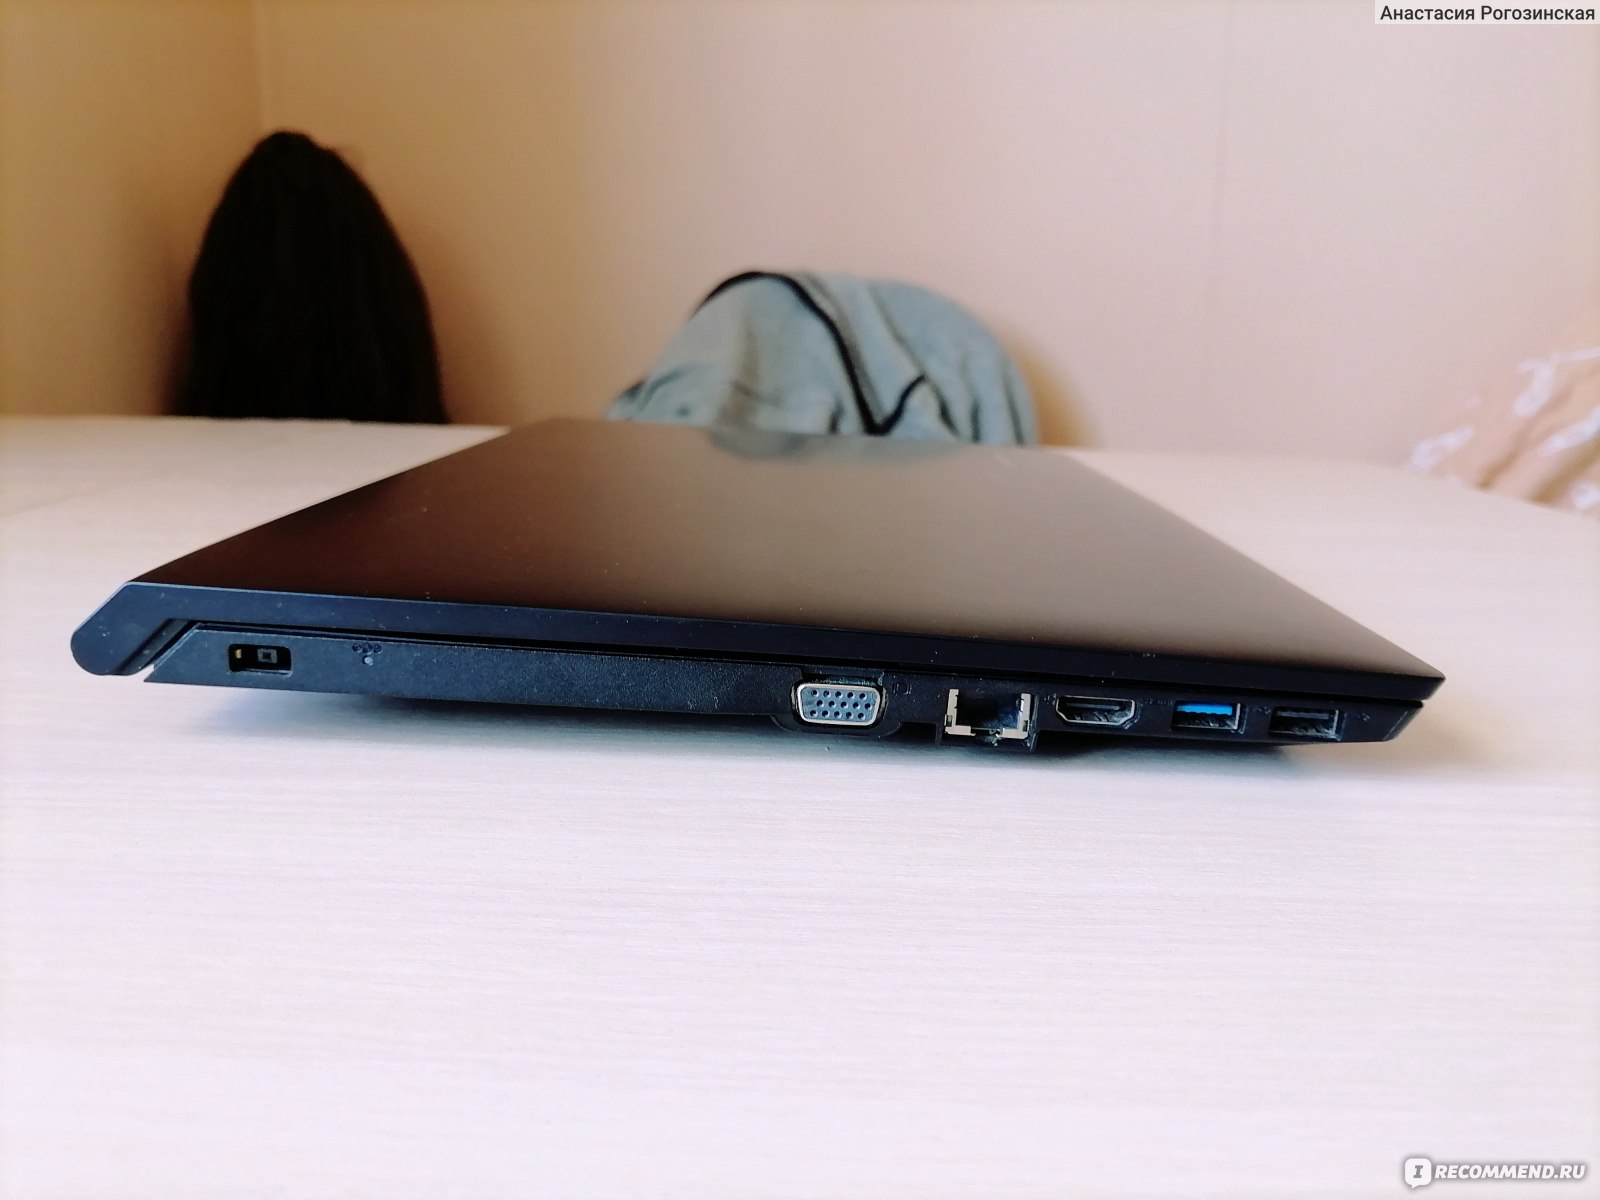 Купить Ноутбук Lenovo B50 30 В Москве